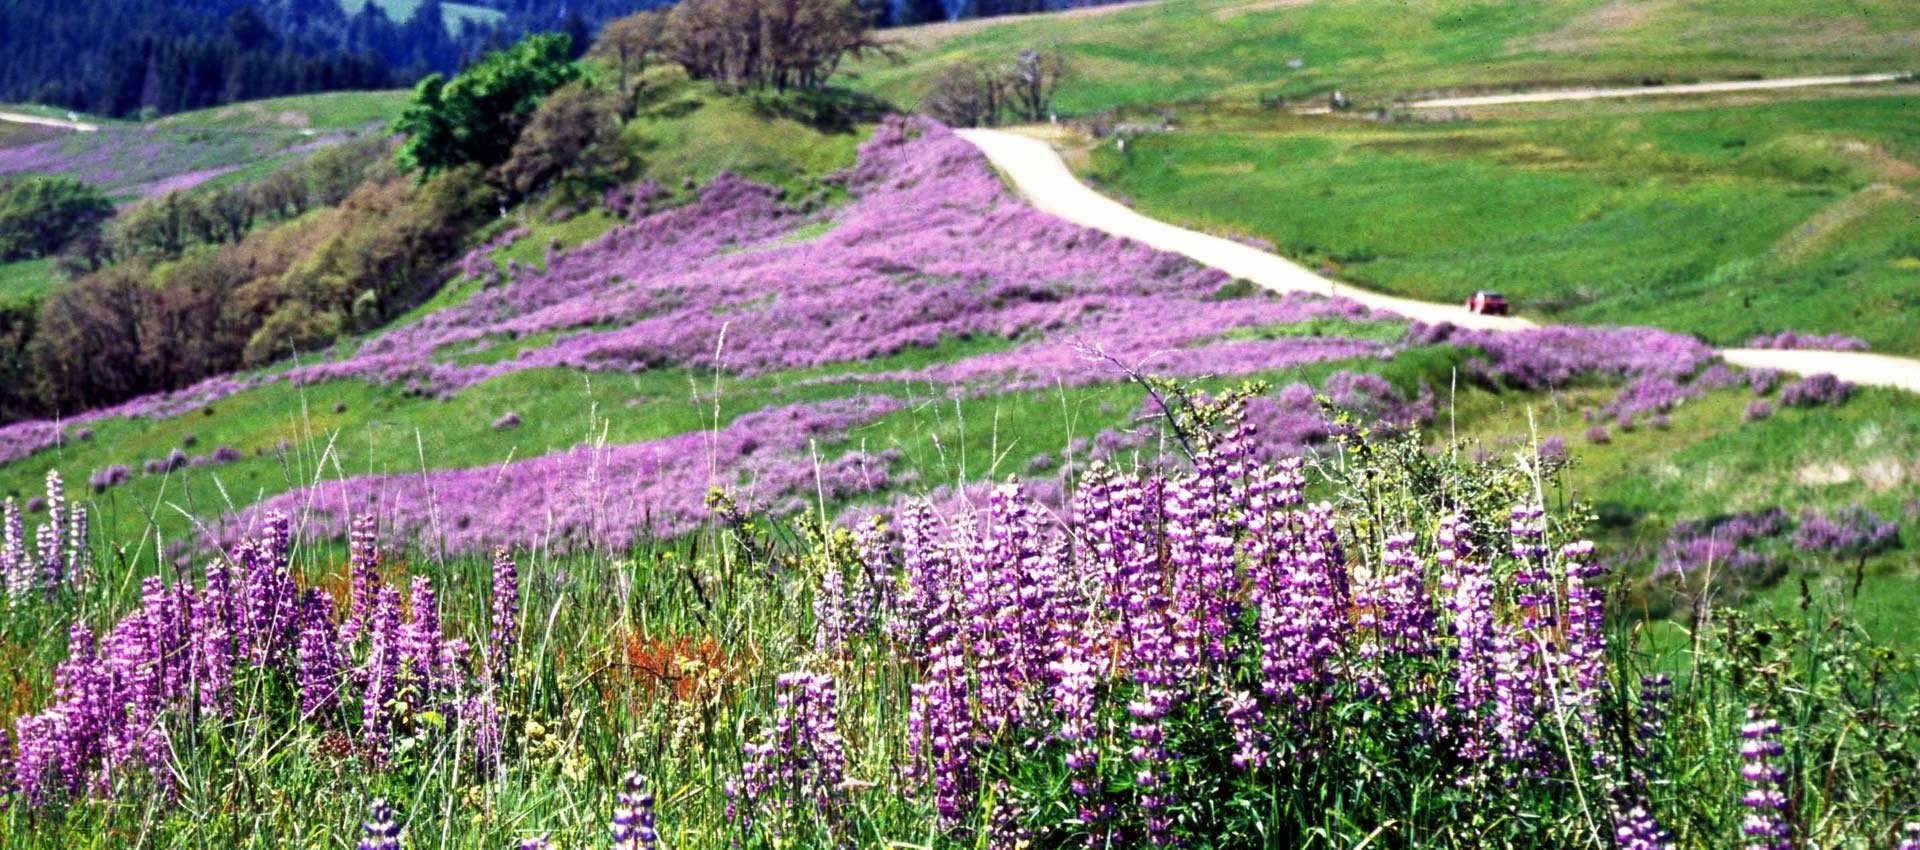 A field of purple wildflowers